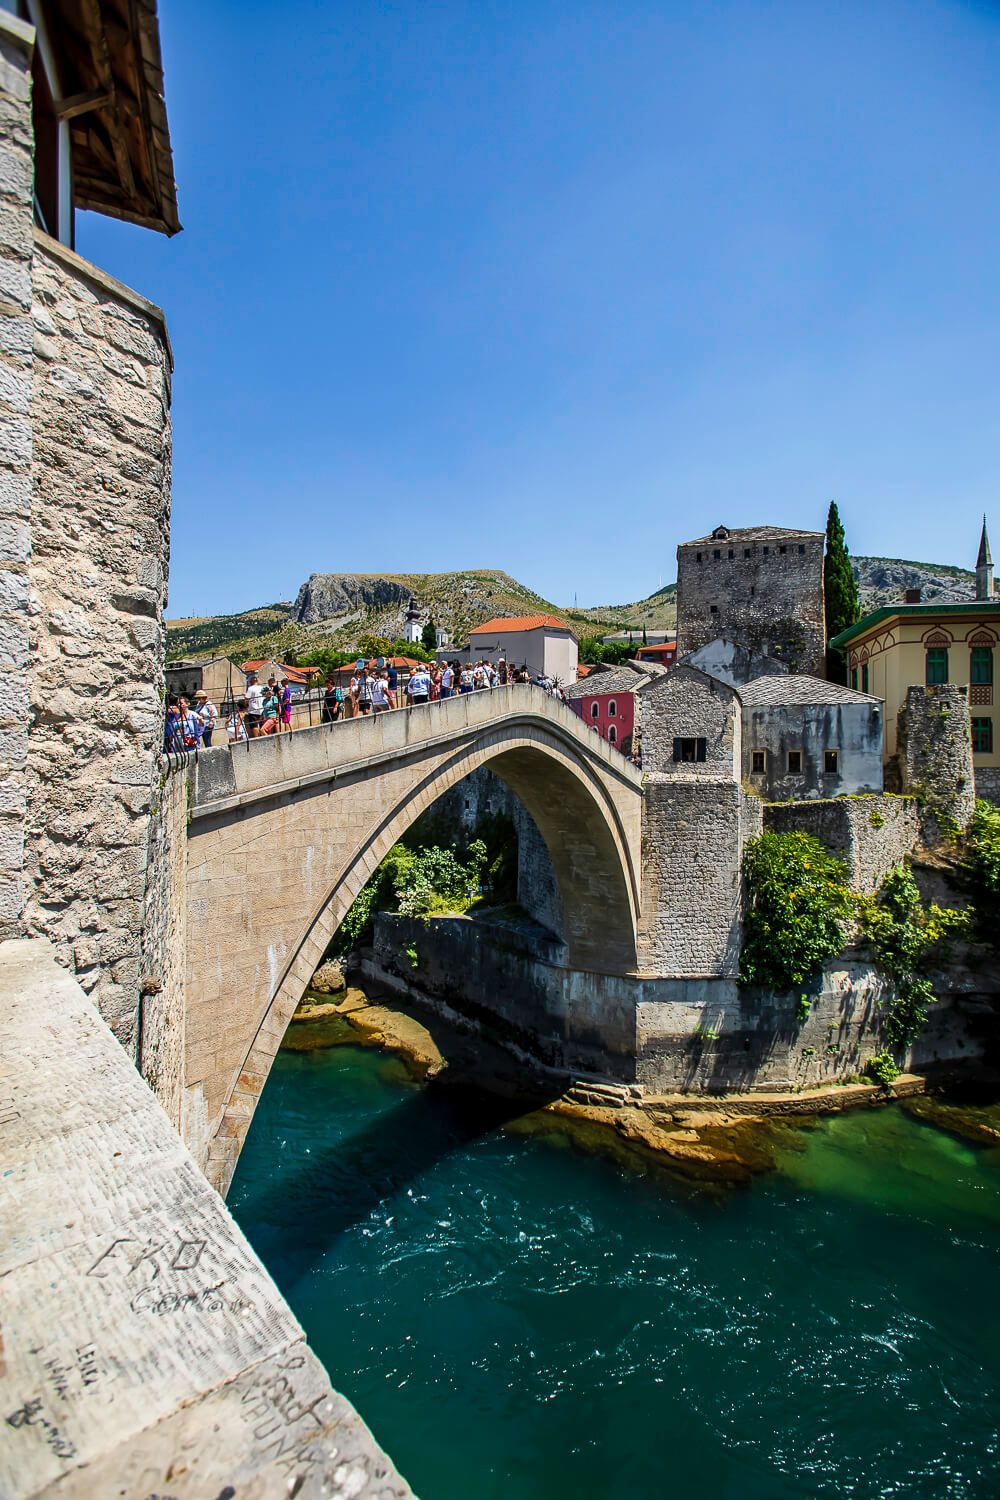 Stari Most or Old Bridge in Bosnia & Herzegovina